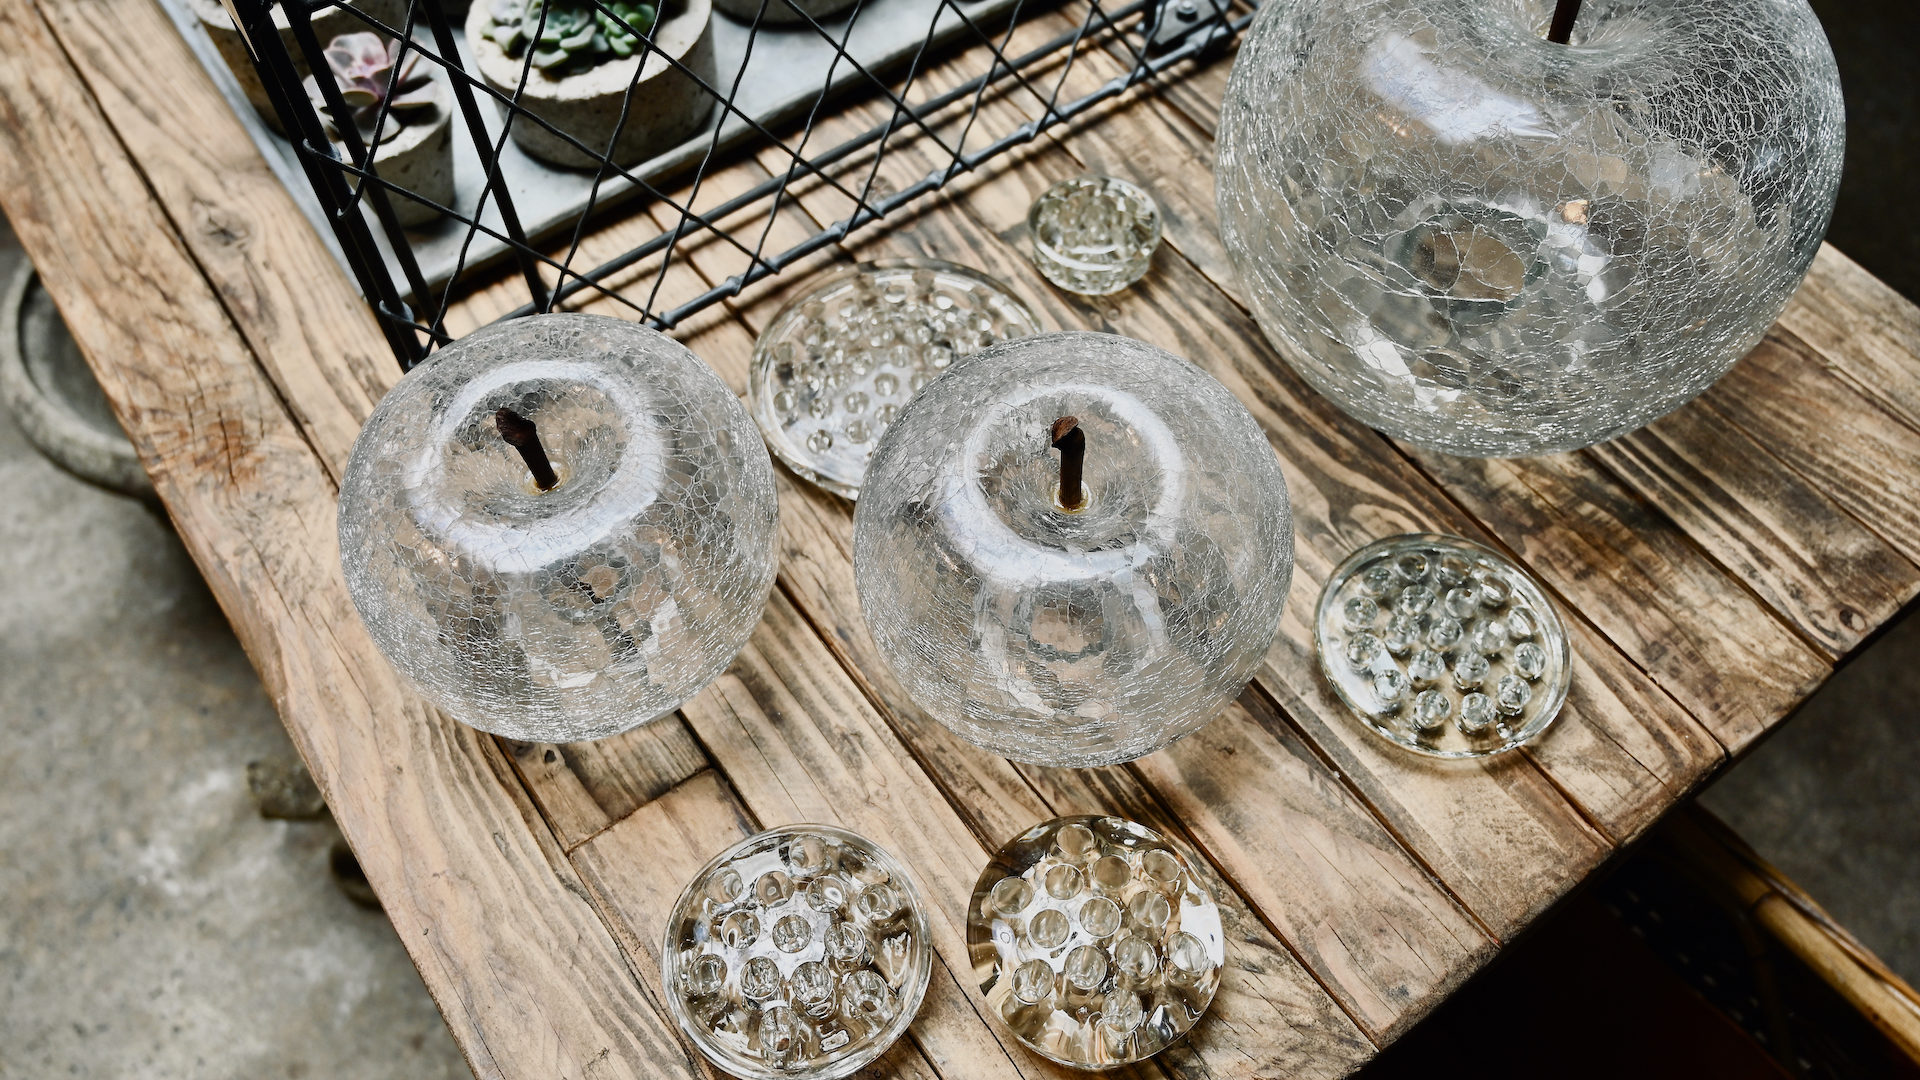 Shop: Vintage Glass Flower Frogs & Handmade Crackled Glass Apple-Shaped Sculptures | Detroit Garden Works